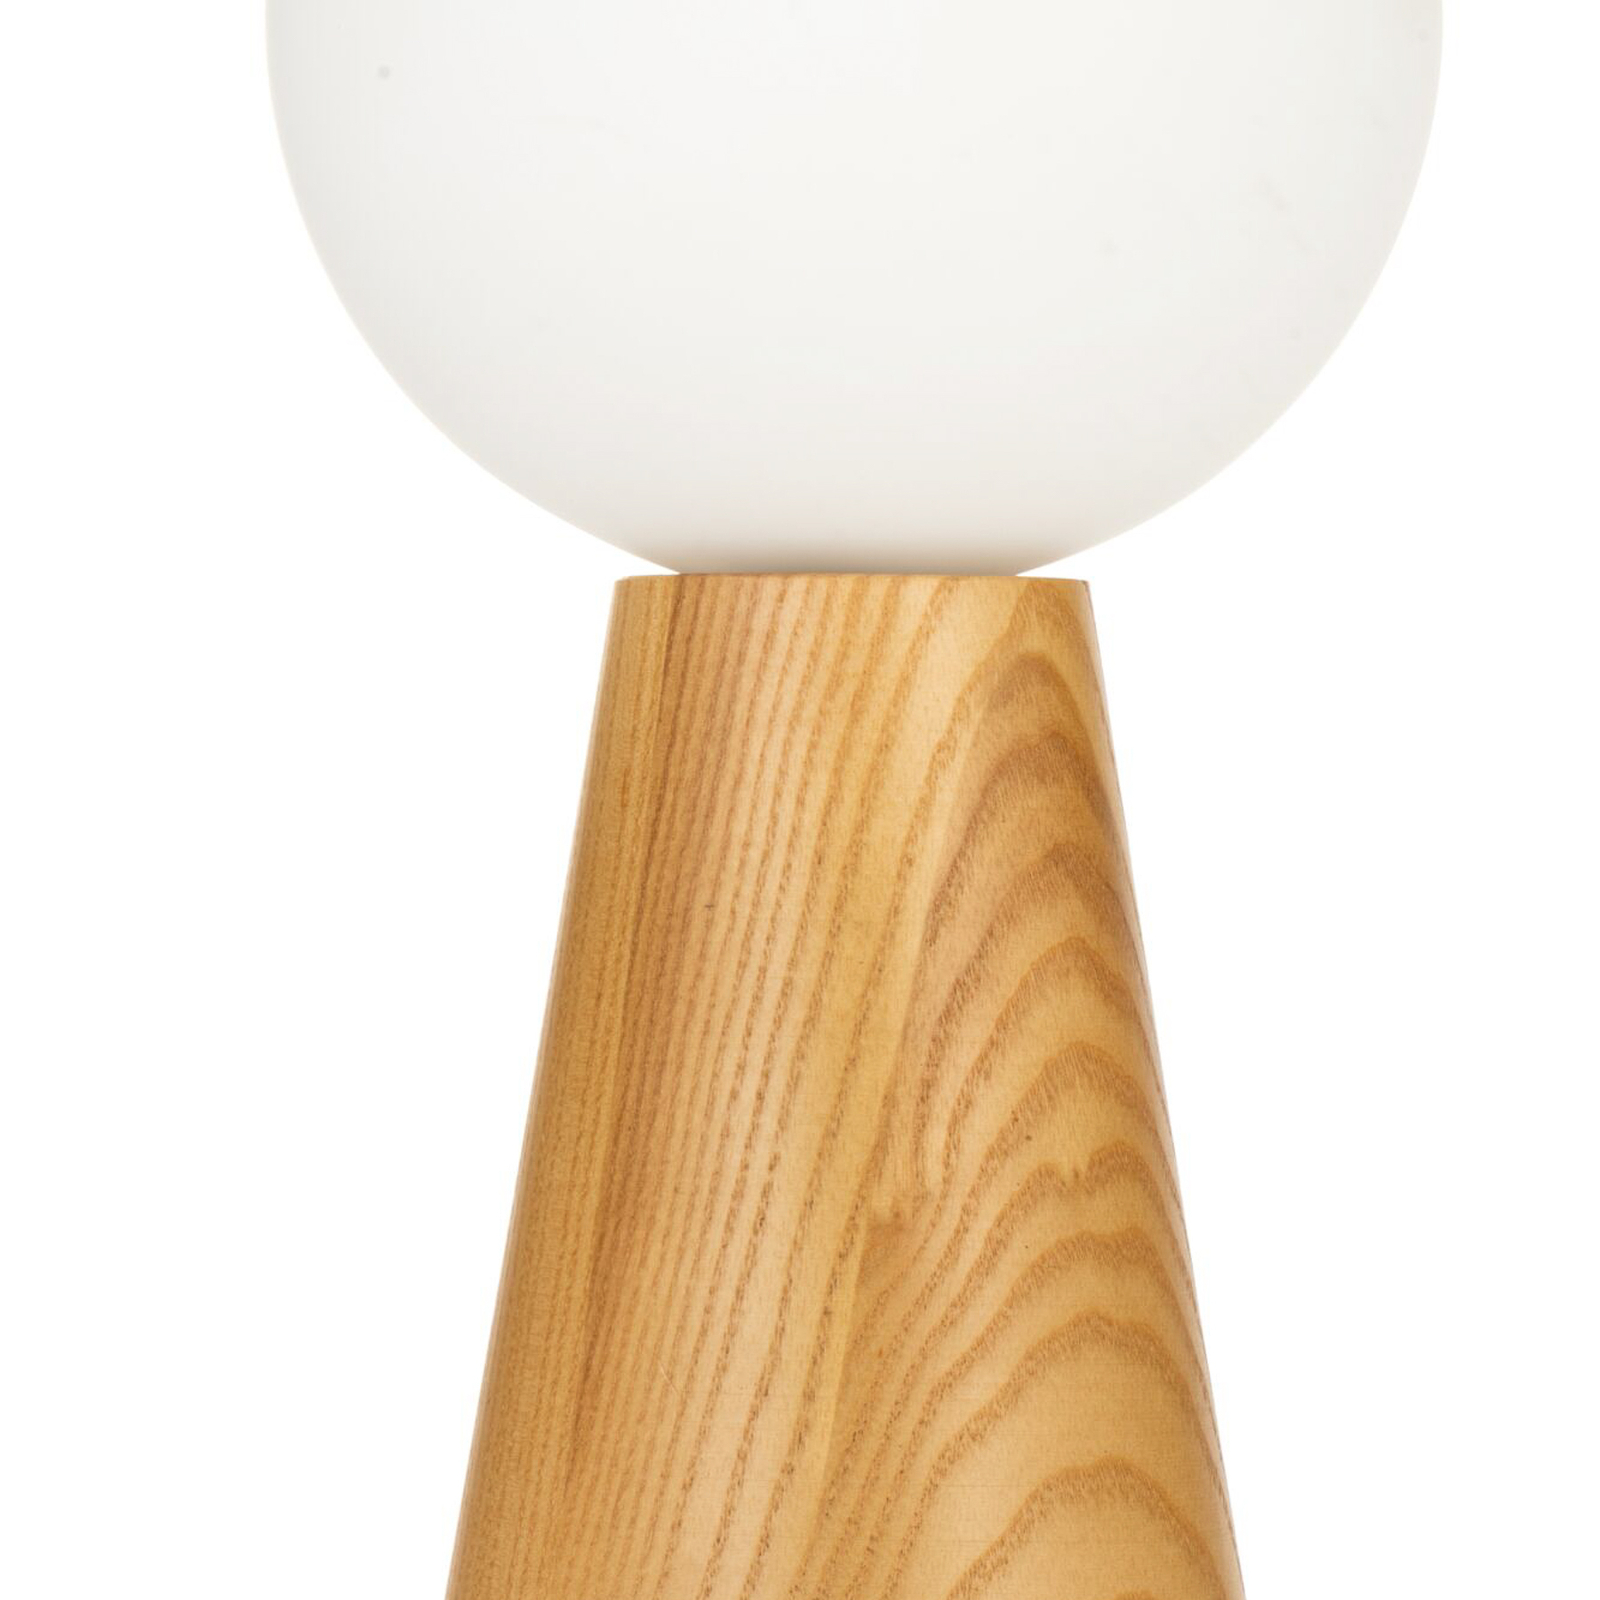 Pauleen Woody Soul tafellamp, houten voet, glasbol